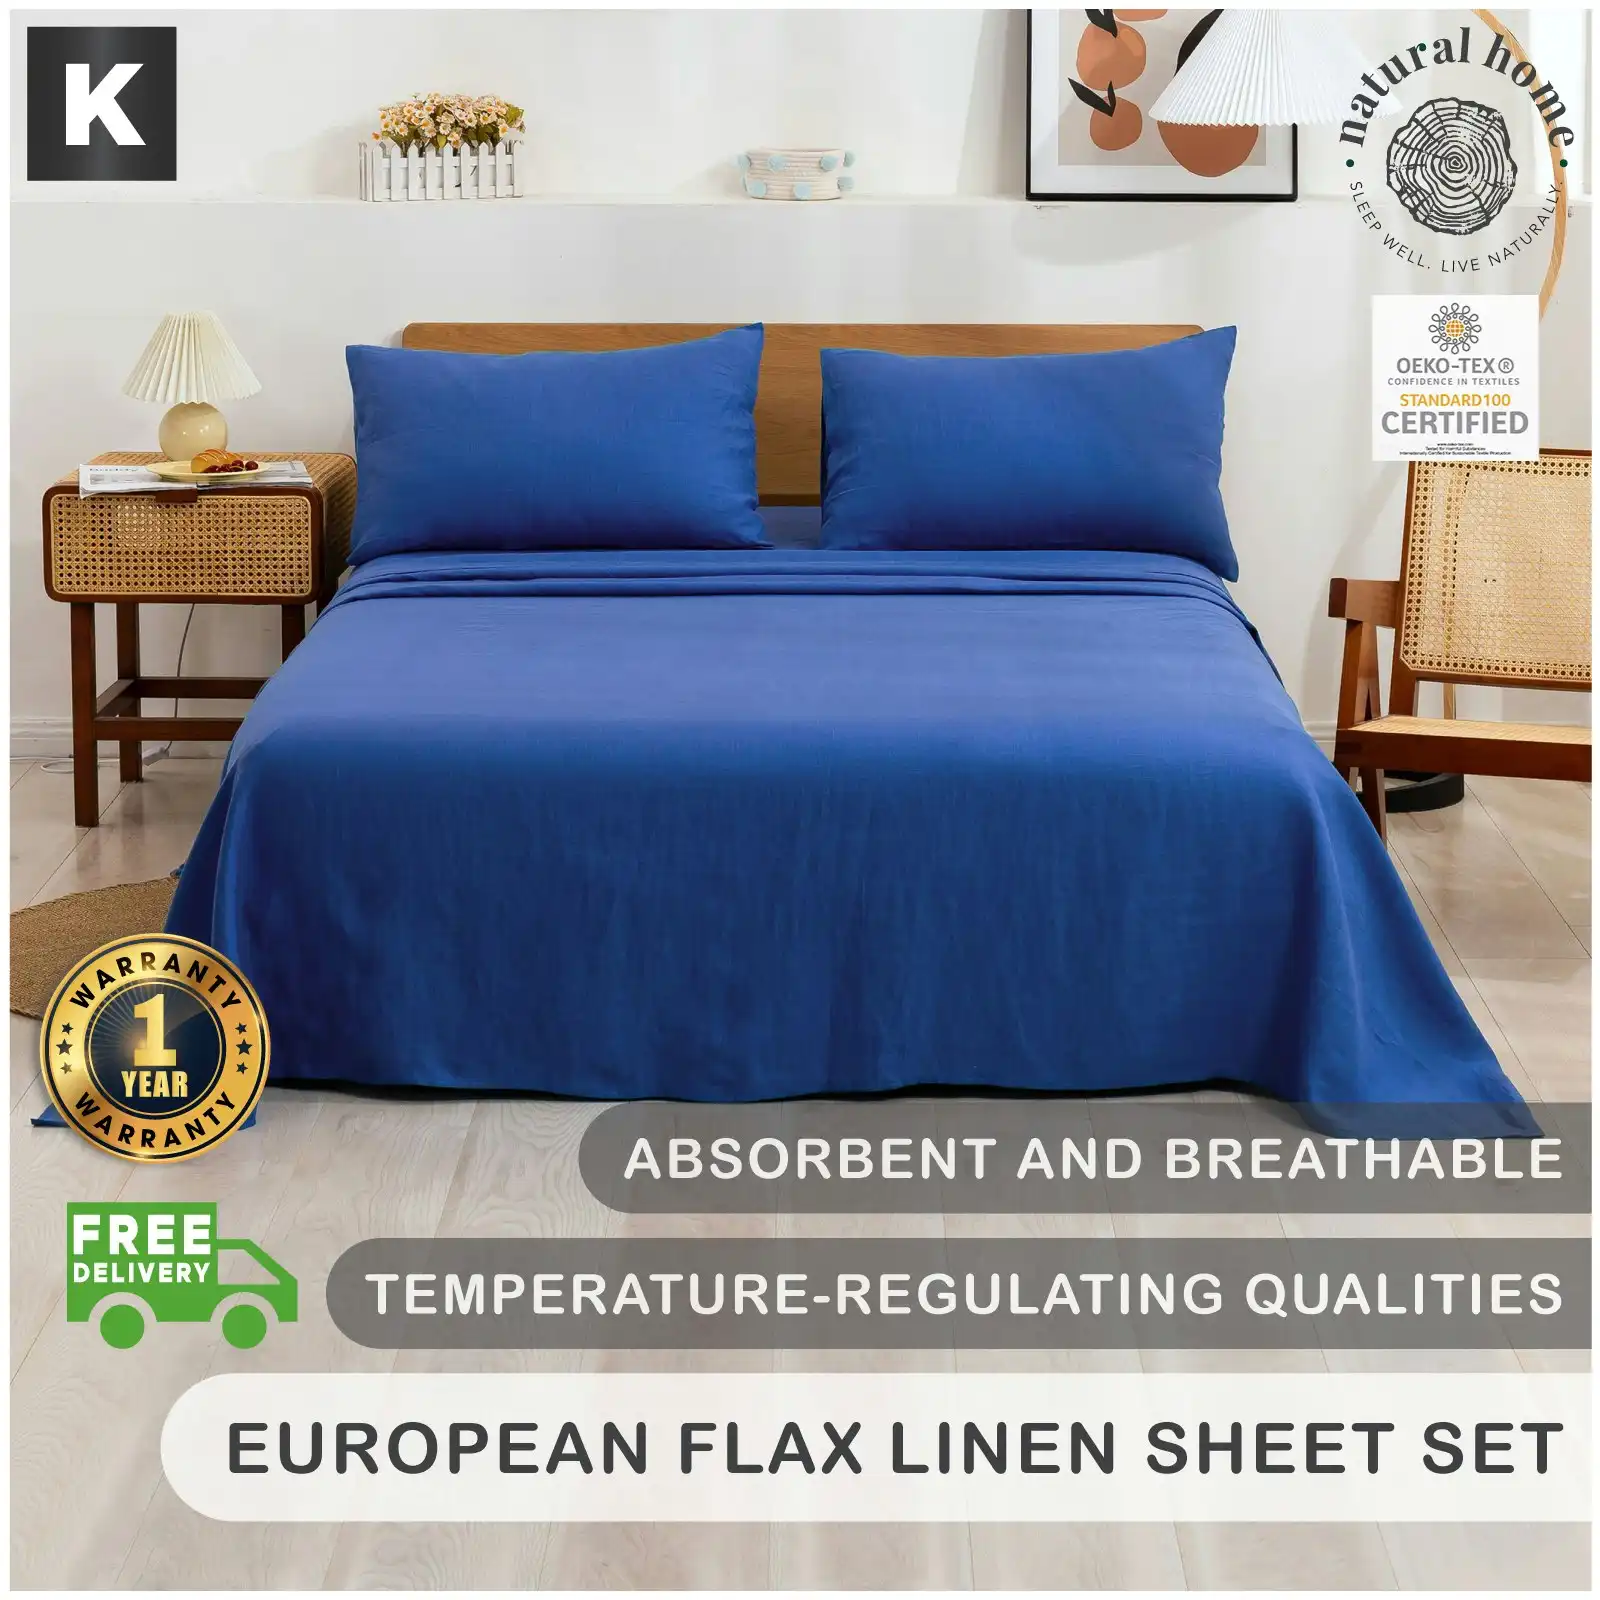 Natural Home 100% European Flax Linen Sheet Set - Deep Blue - King Bed